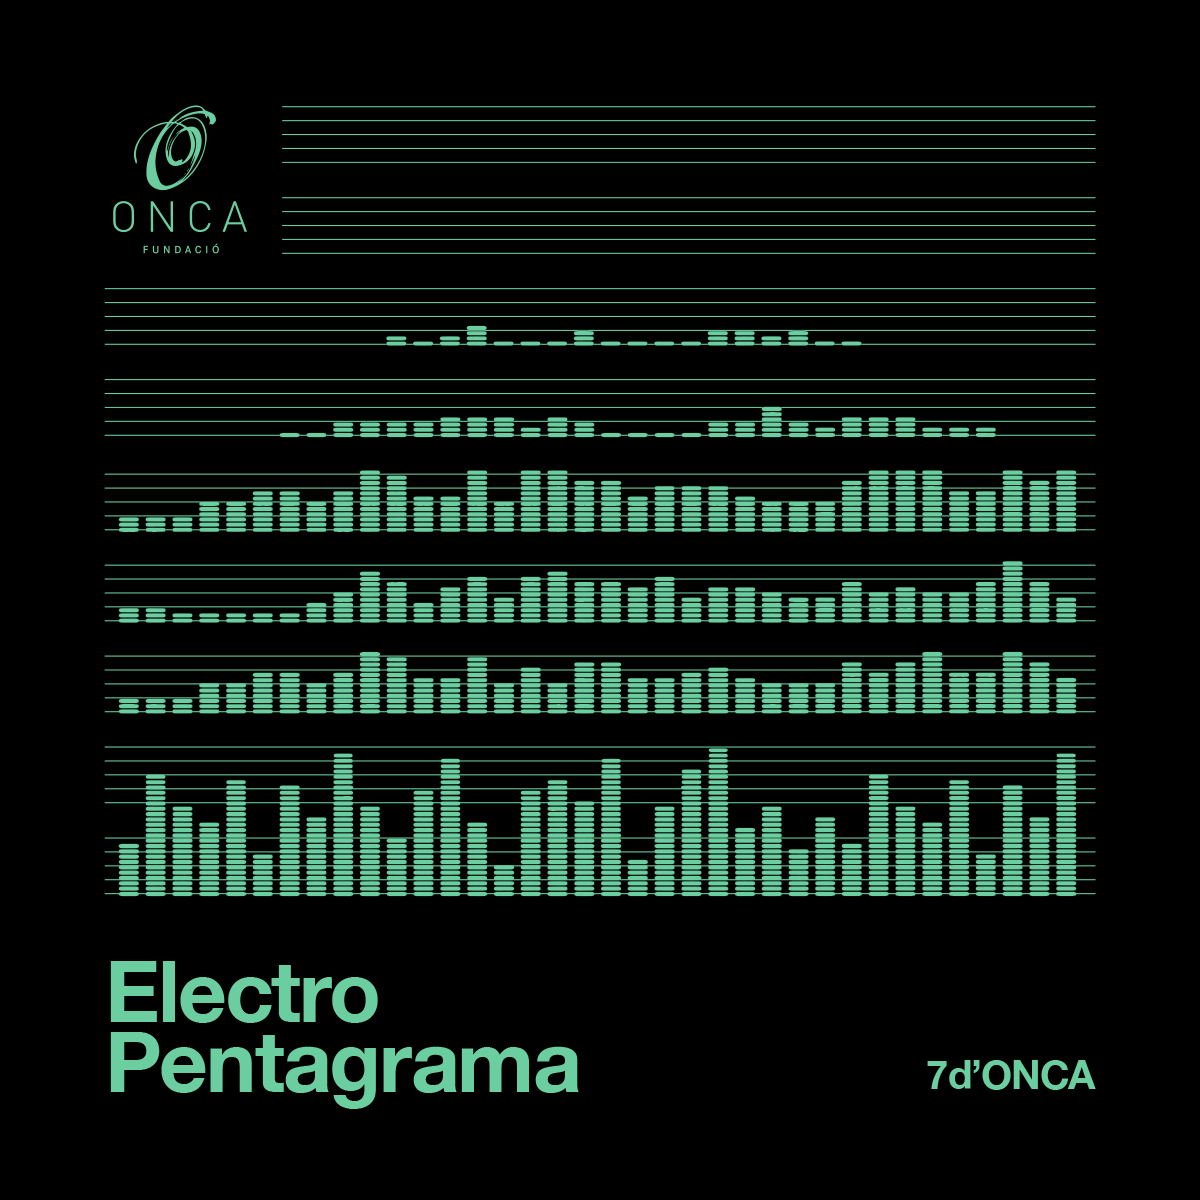 La Fundació ONCA presenta ‘Electro Pentagrama’, un espectacle que fusiona dansa, música clàssica i música electrònica, dins el nou cicle d’estiu «7 d’ONCA»